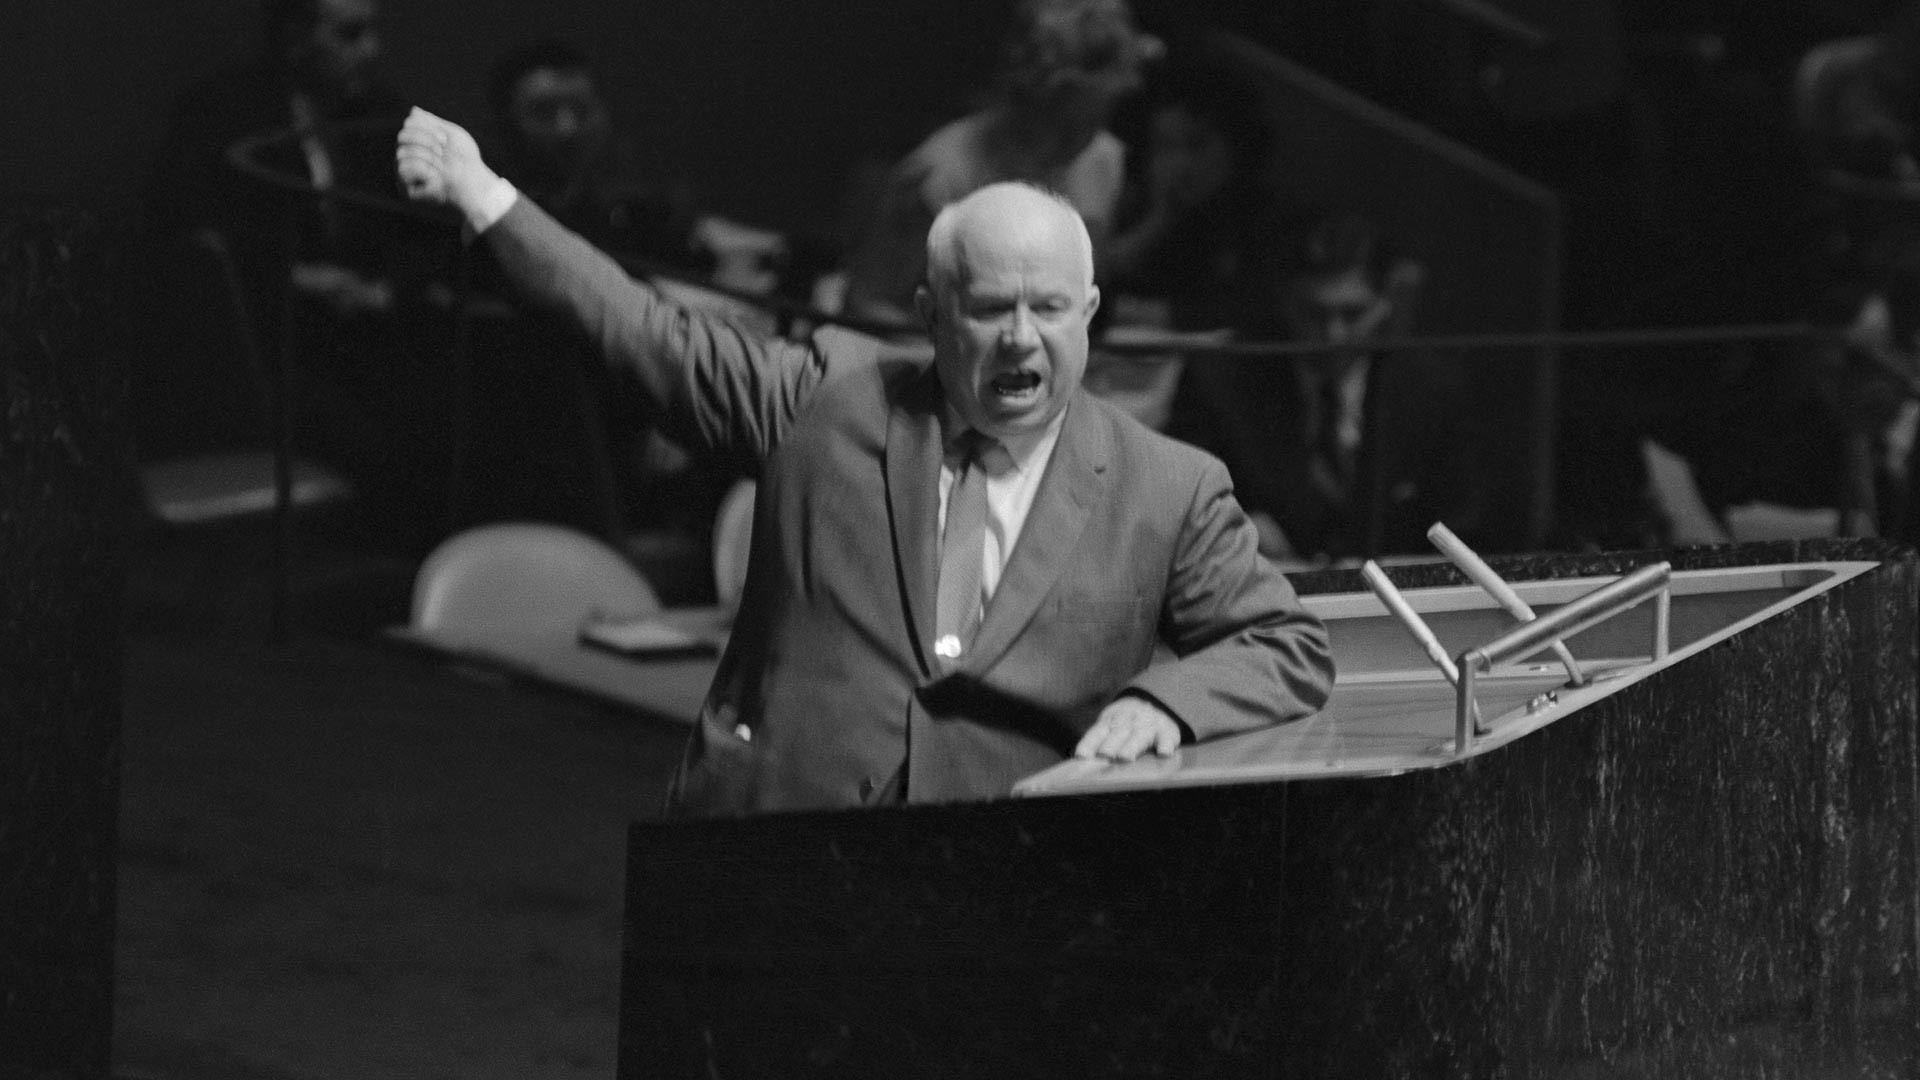 
Sovjetski vođa Nikita Hruščov gestikulira i viče za govornicom Generalne skupštine UN-a, tražeći od predsjedavajućeg, Frederica Bolanda da oduzme riječ Lorenzu Sumulongu s Filipina koji je predlagao da SSSR izvrši dekolonizaciju Istočne Europe. Generalna skupština UN-a, 12. listopad 1960.